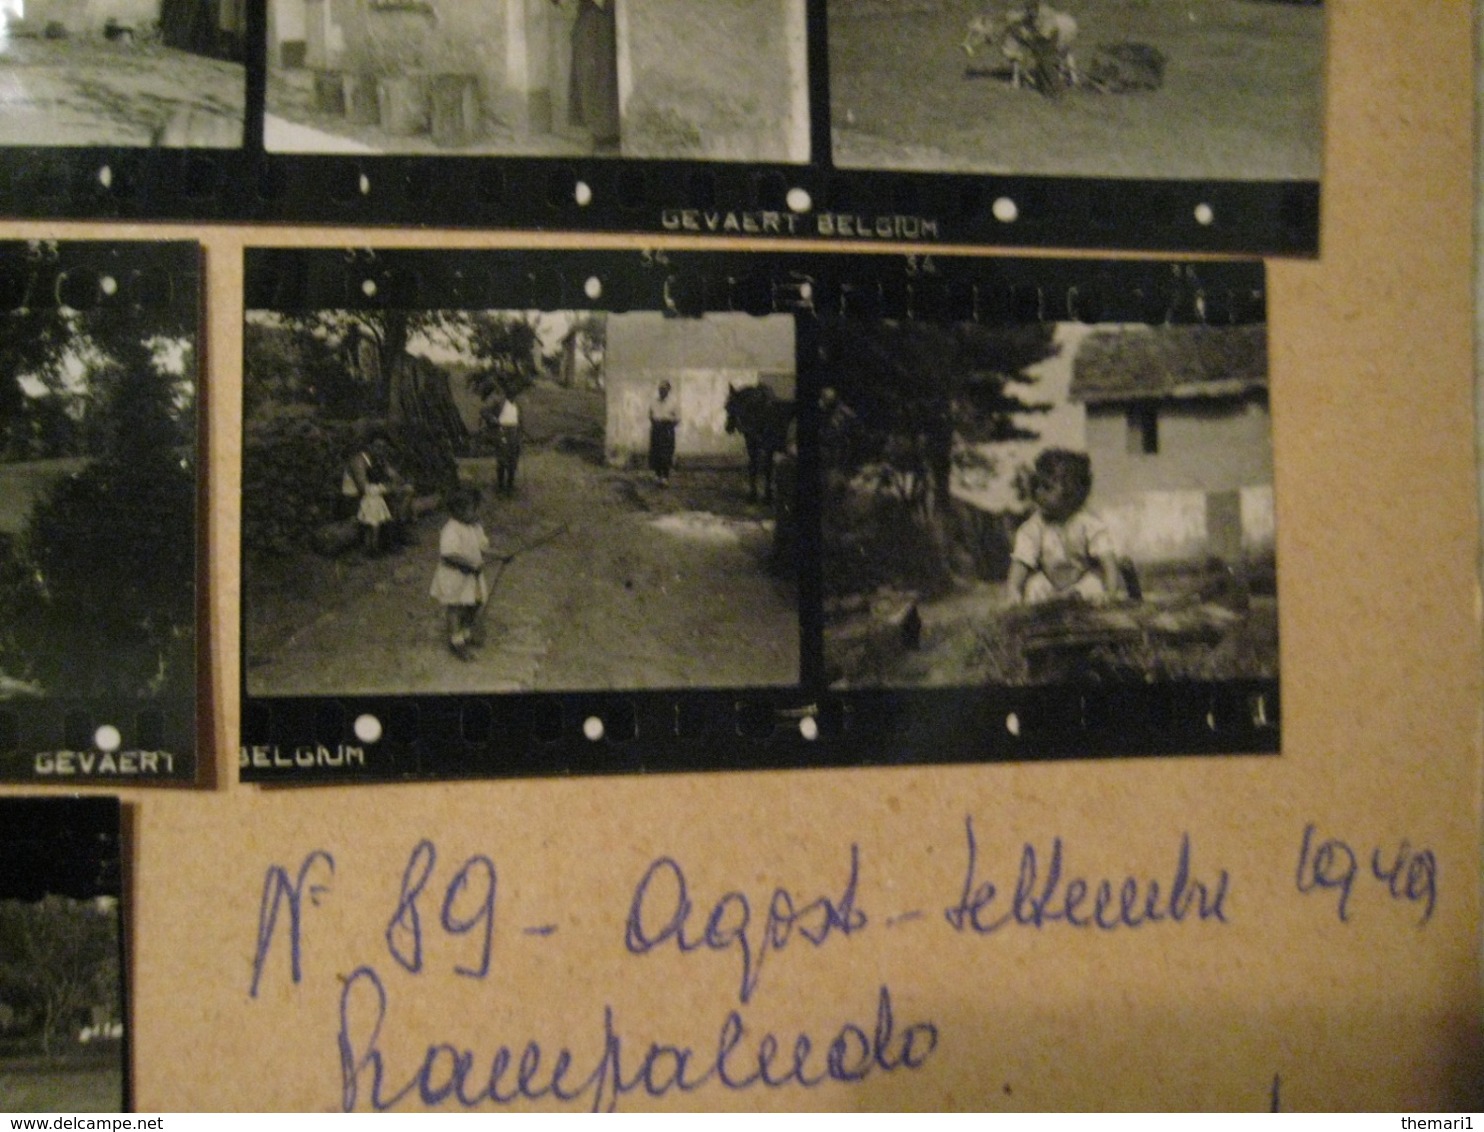 33 PROVINI FOTO SU FOGLIO 1949 PIAMPALUDO CONTADINI MUCCHE PAESAGGI PERSONE CASE E ALTRO - Luoghi